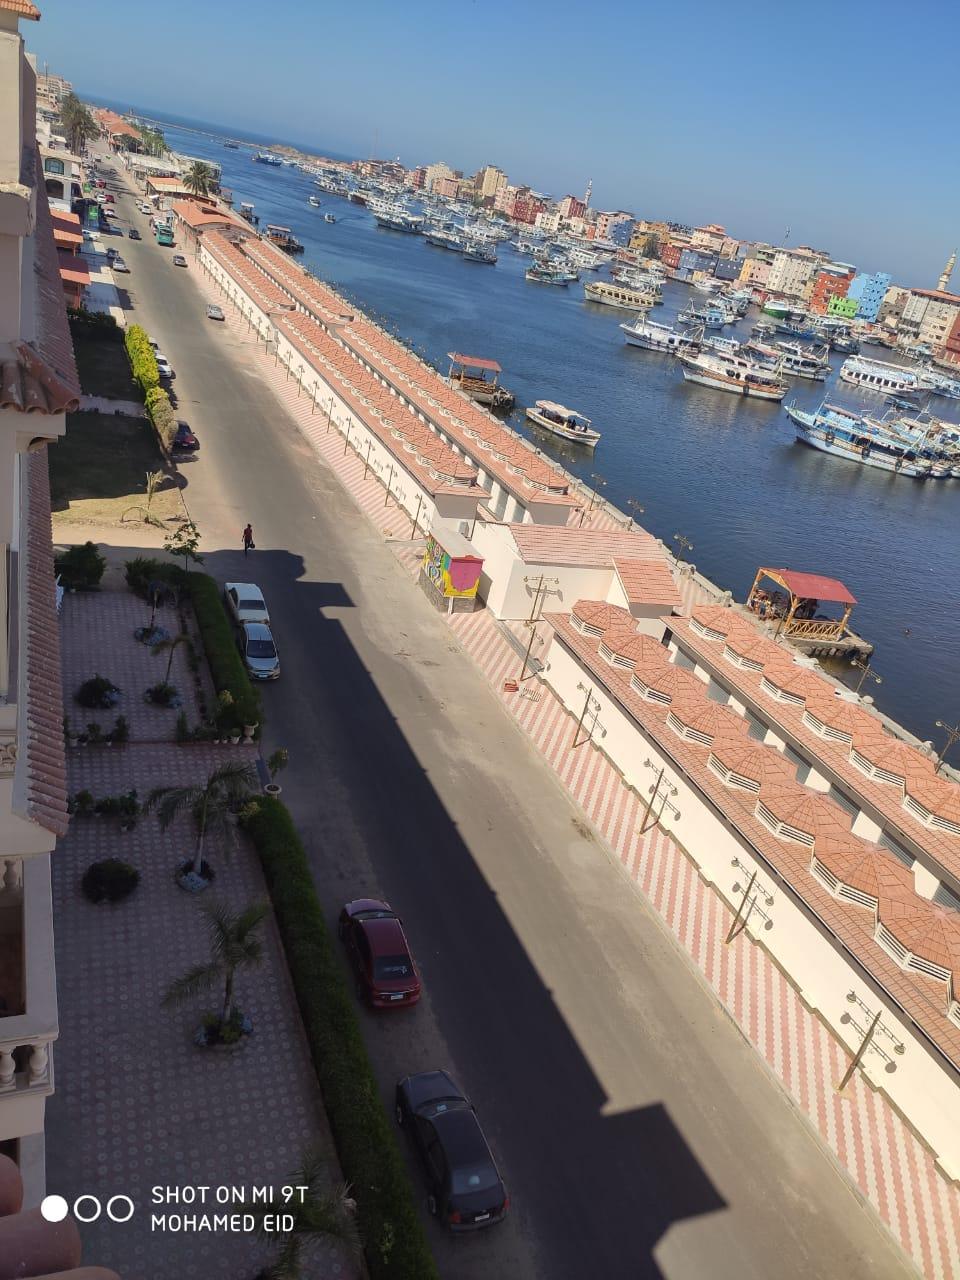   وزير الإسكان يختتم جولته في رأس البر : إنشاء السوق بشكل حضاري مميز للحفاظ على طابع دمياط السياحي